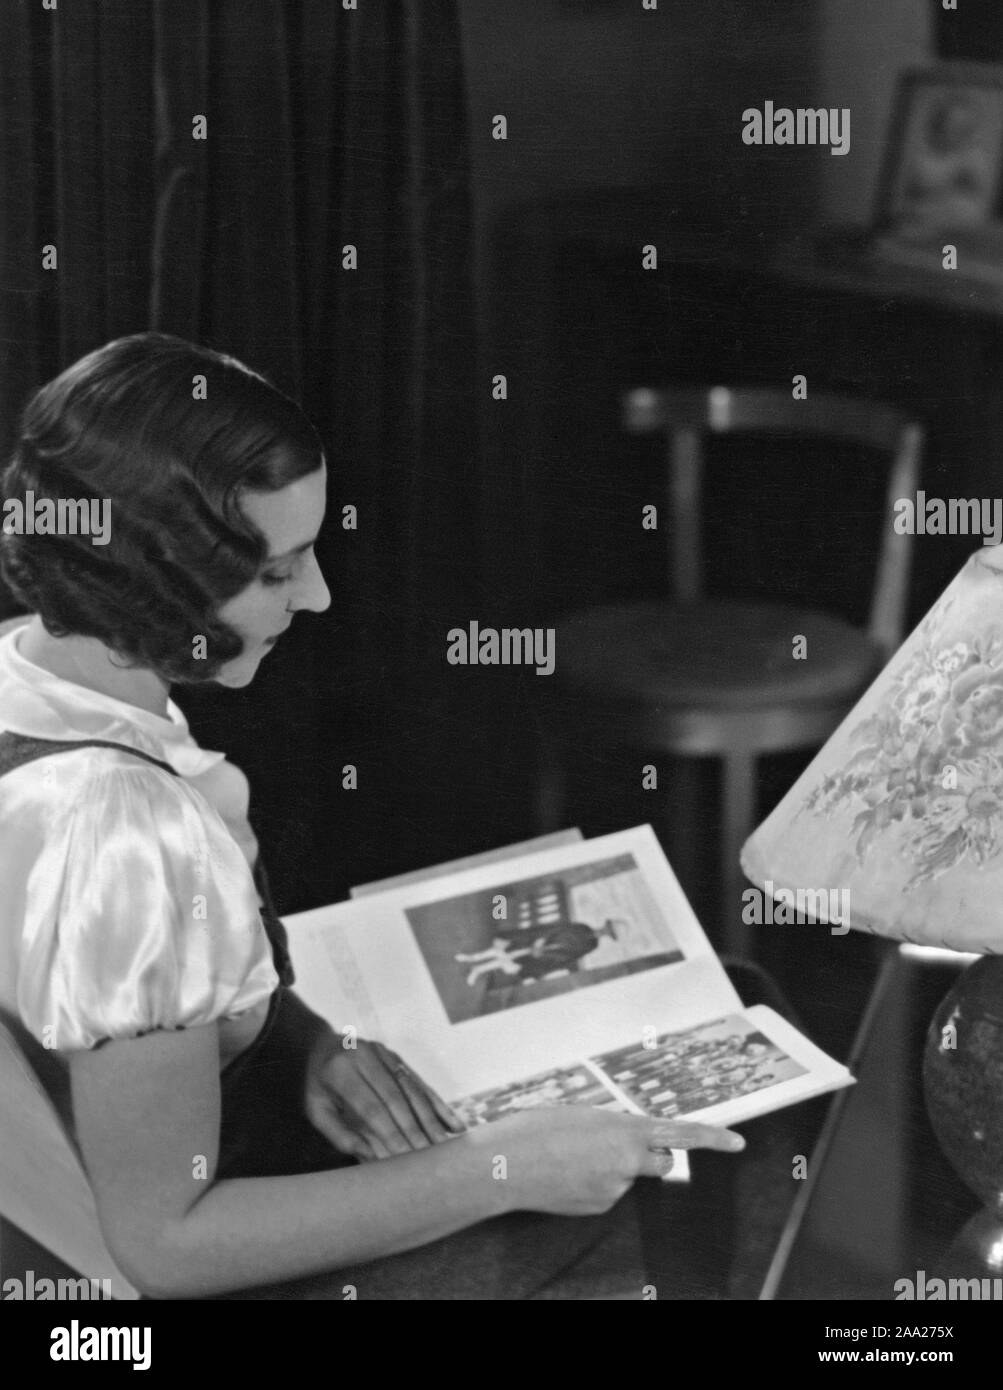 Frau der 1930er Jahre. Eine junge dunkelhaarige Frau mit einem typischen Haarschnitt der Zeit, kurz und mit gewellten curles von Hand gefertigt. Schweden 1930 Stockfoto